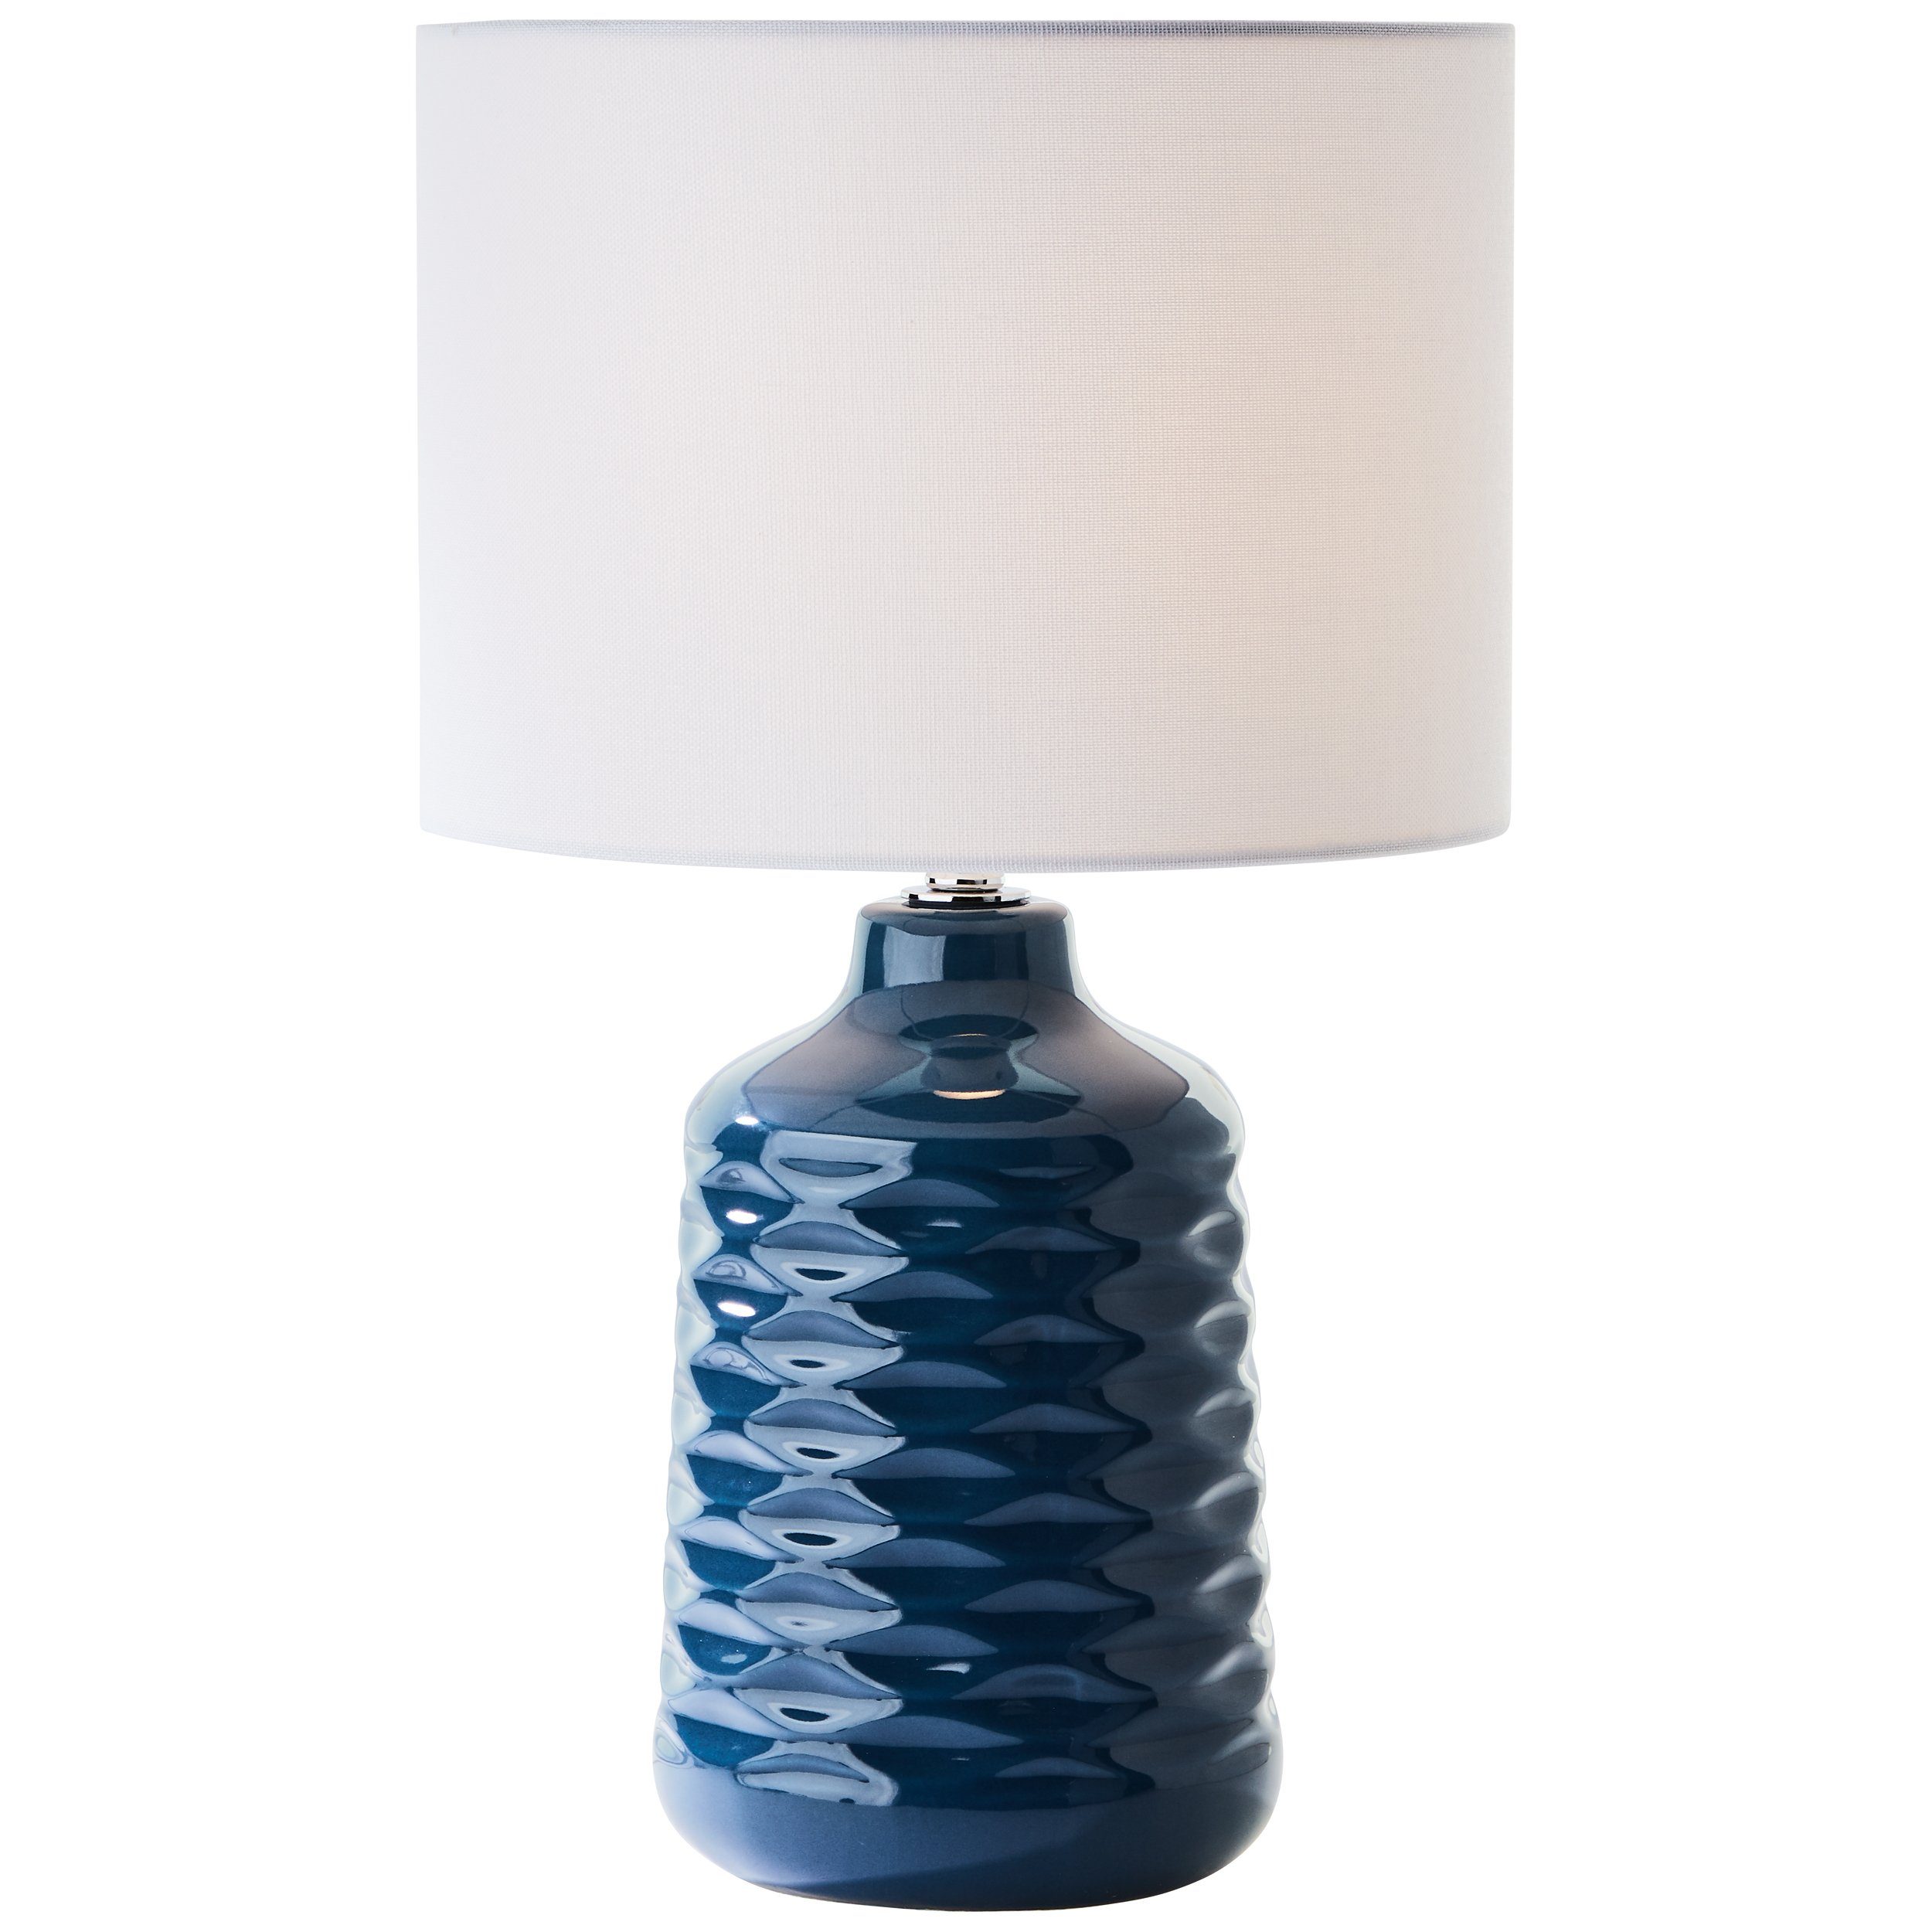 Brilliant Tischleuchte Ilysa, Ilysa Tischleuchte 42cm blau/weiß, Keramik/Metall/Textil, 1x D45, E14 | Tischlampen